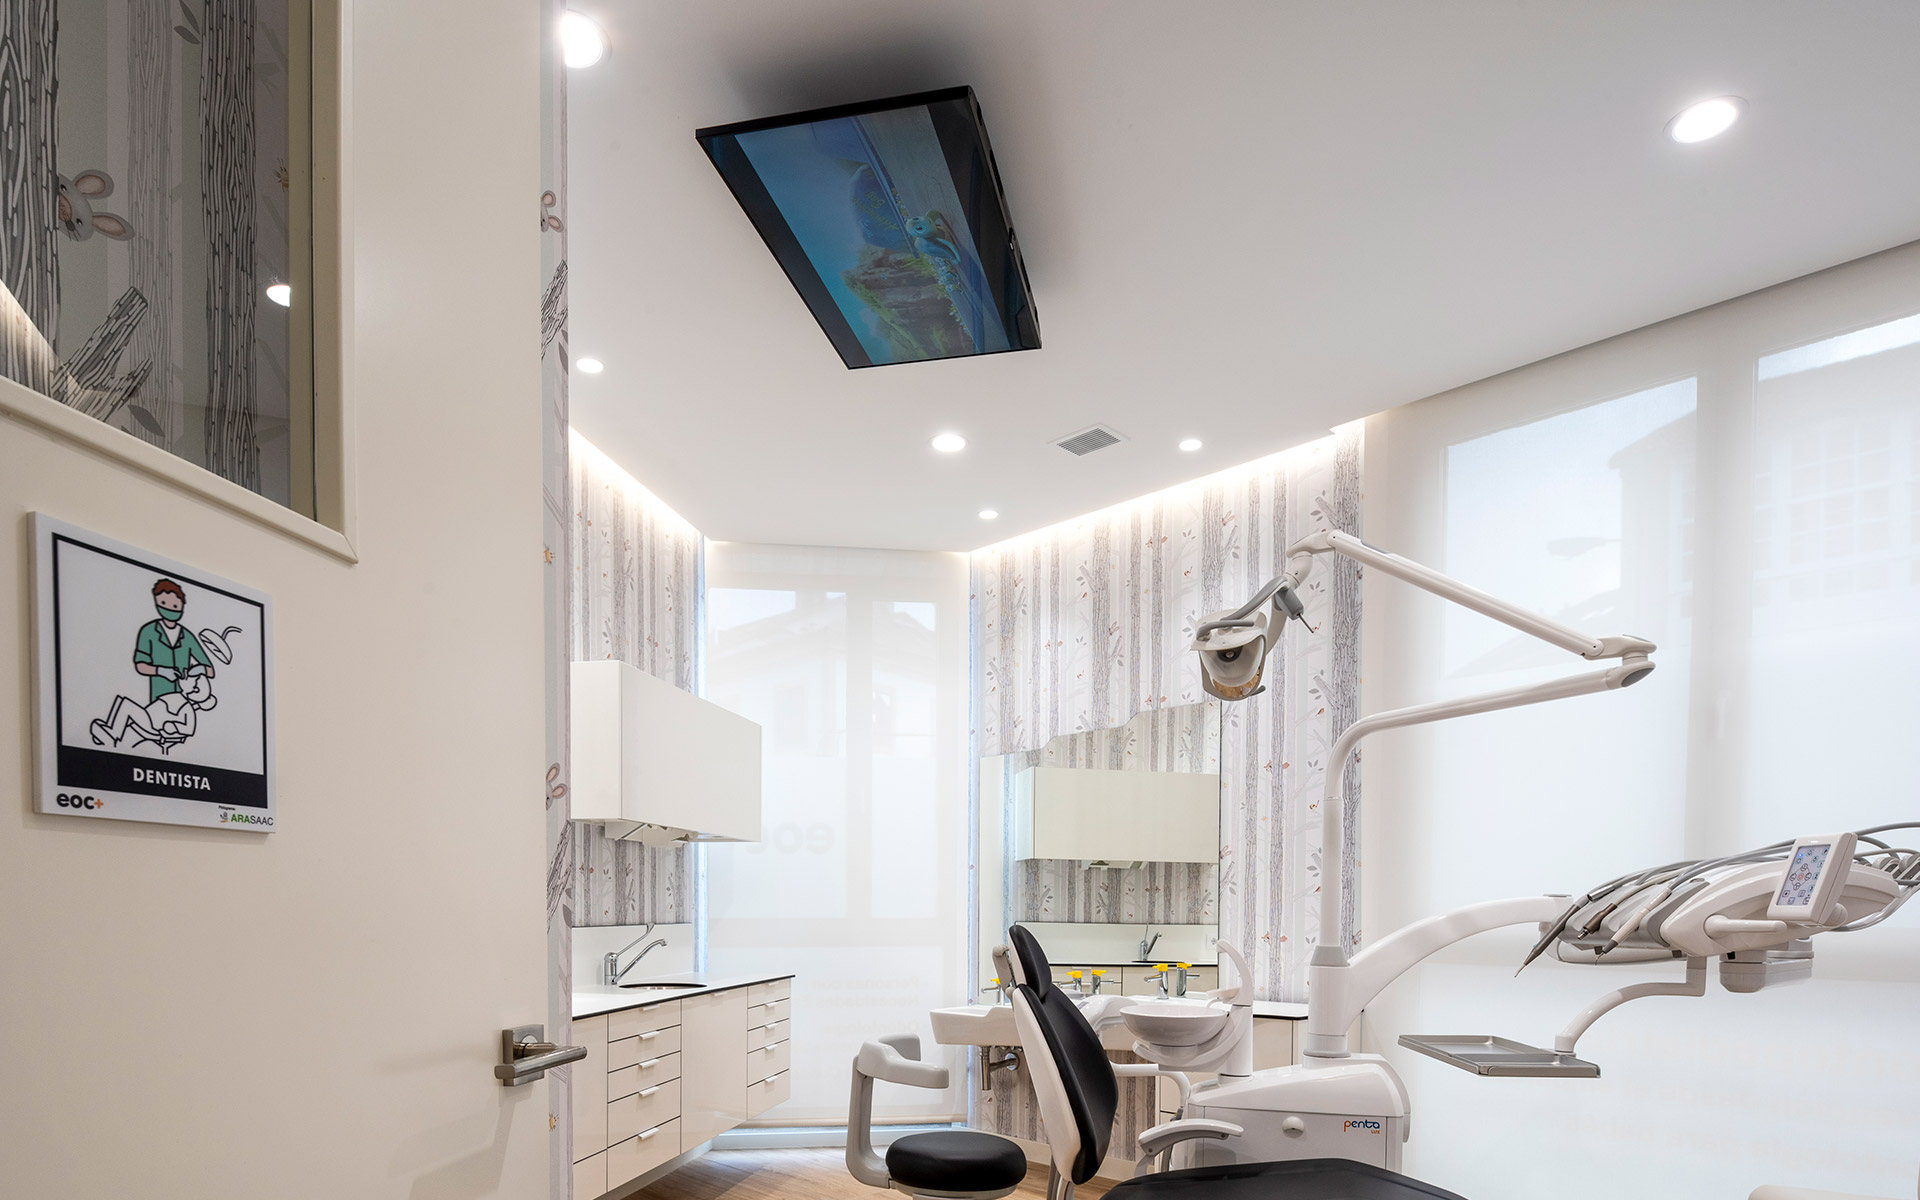 Consulta de clinica dental con una tv en el techo